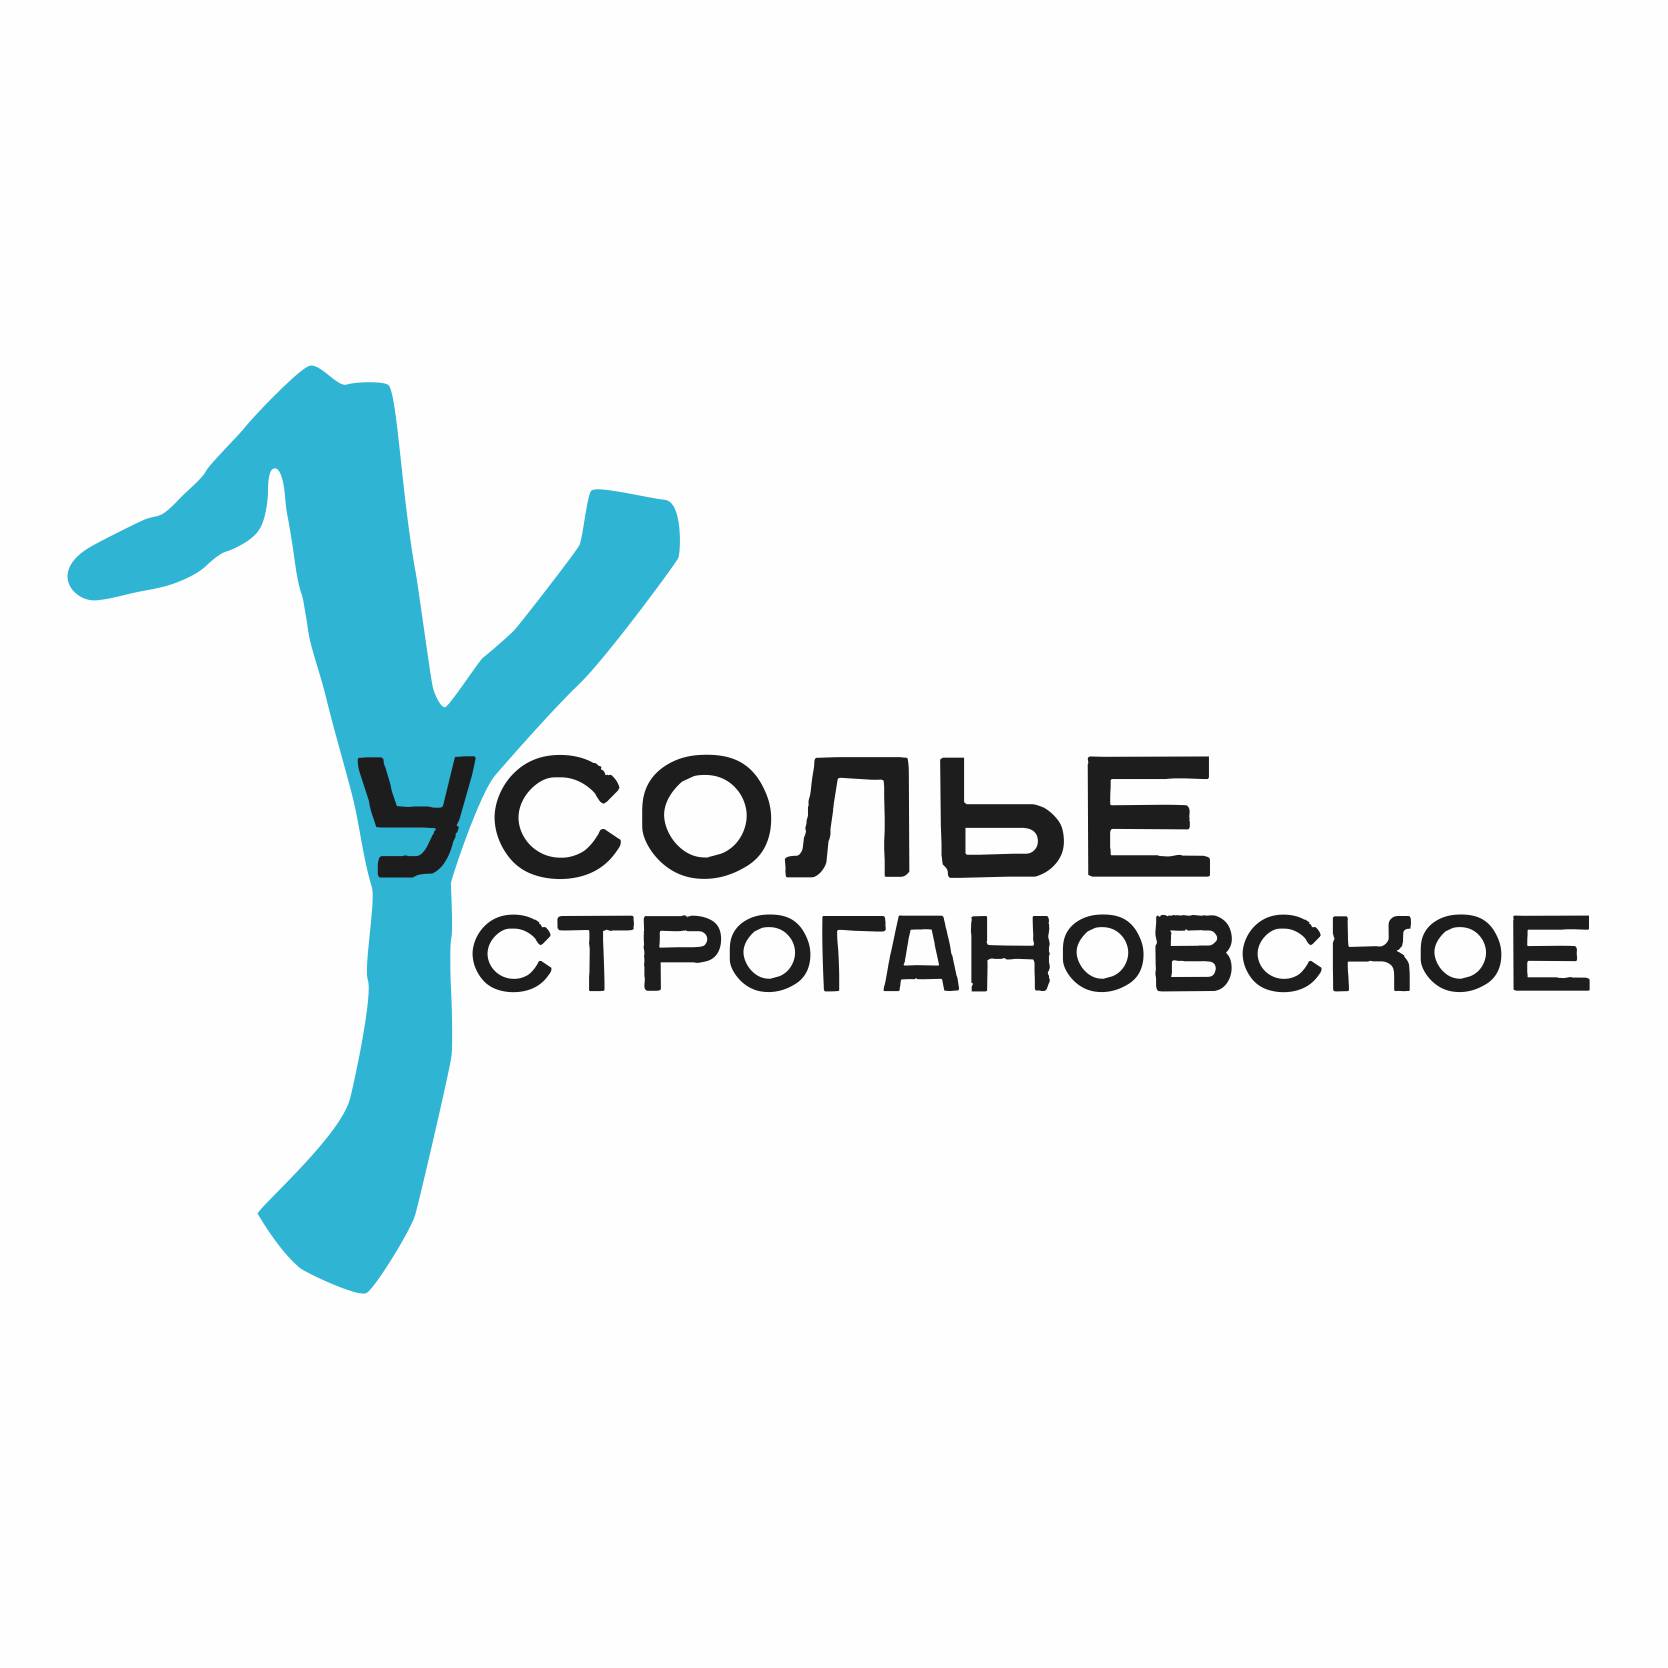 Состоялась презентация фирменного стиля и логотипа историко-архитектурного комплекса «Усолье Строгановское»